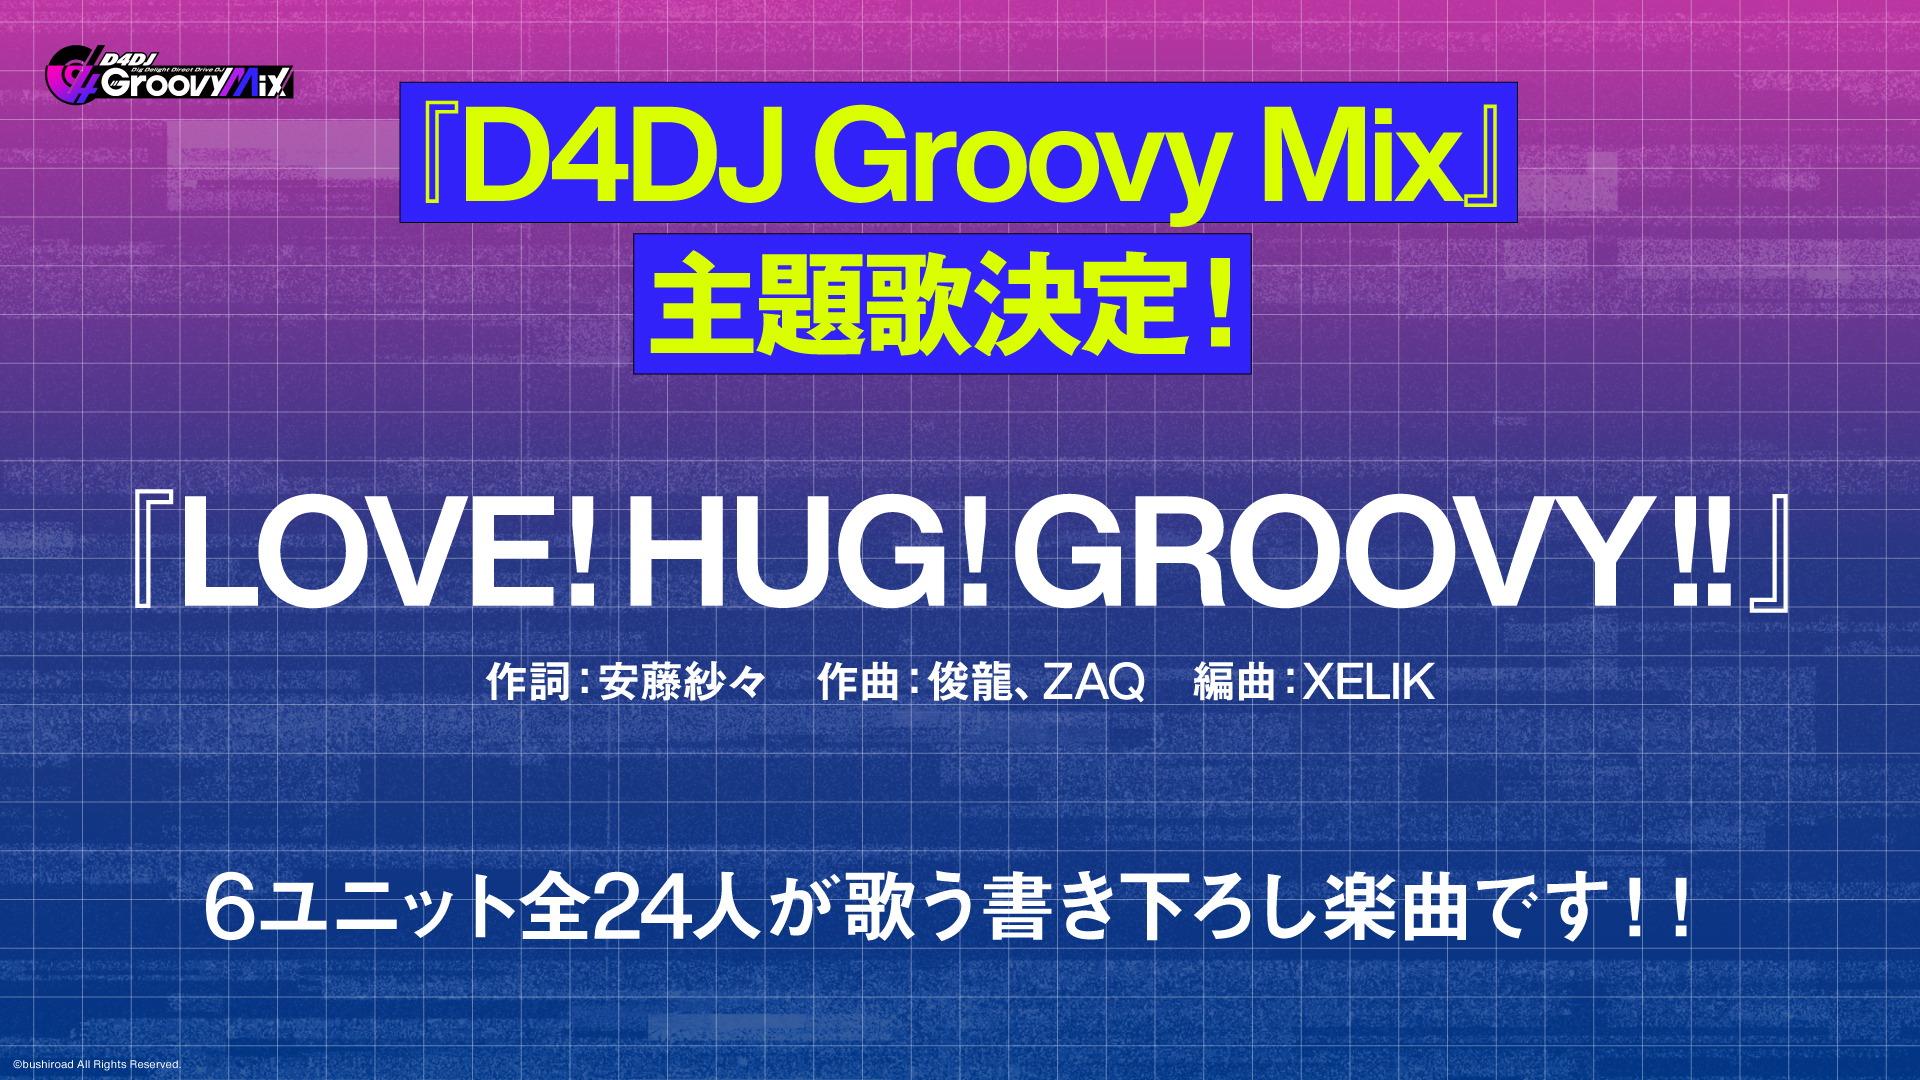 ゲームアプリ「D4DJ Groovy Mix」主題歌「LOVE!HUG!GROOVY!!」